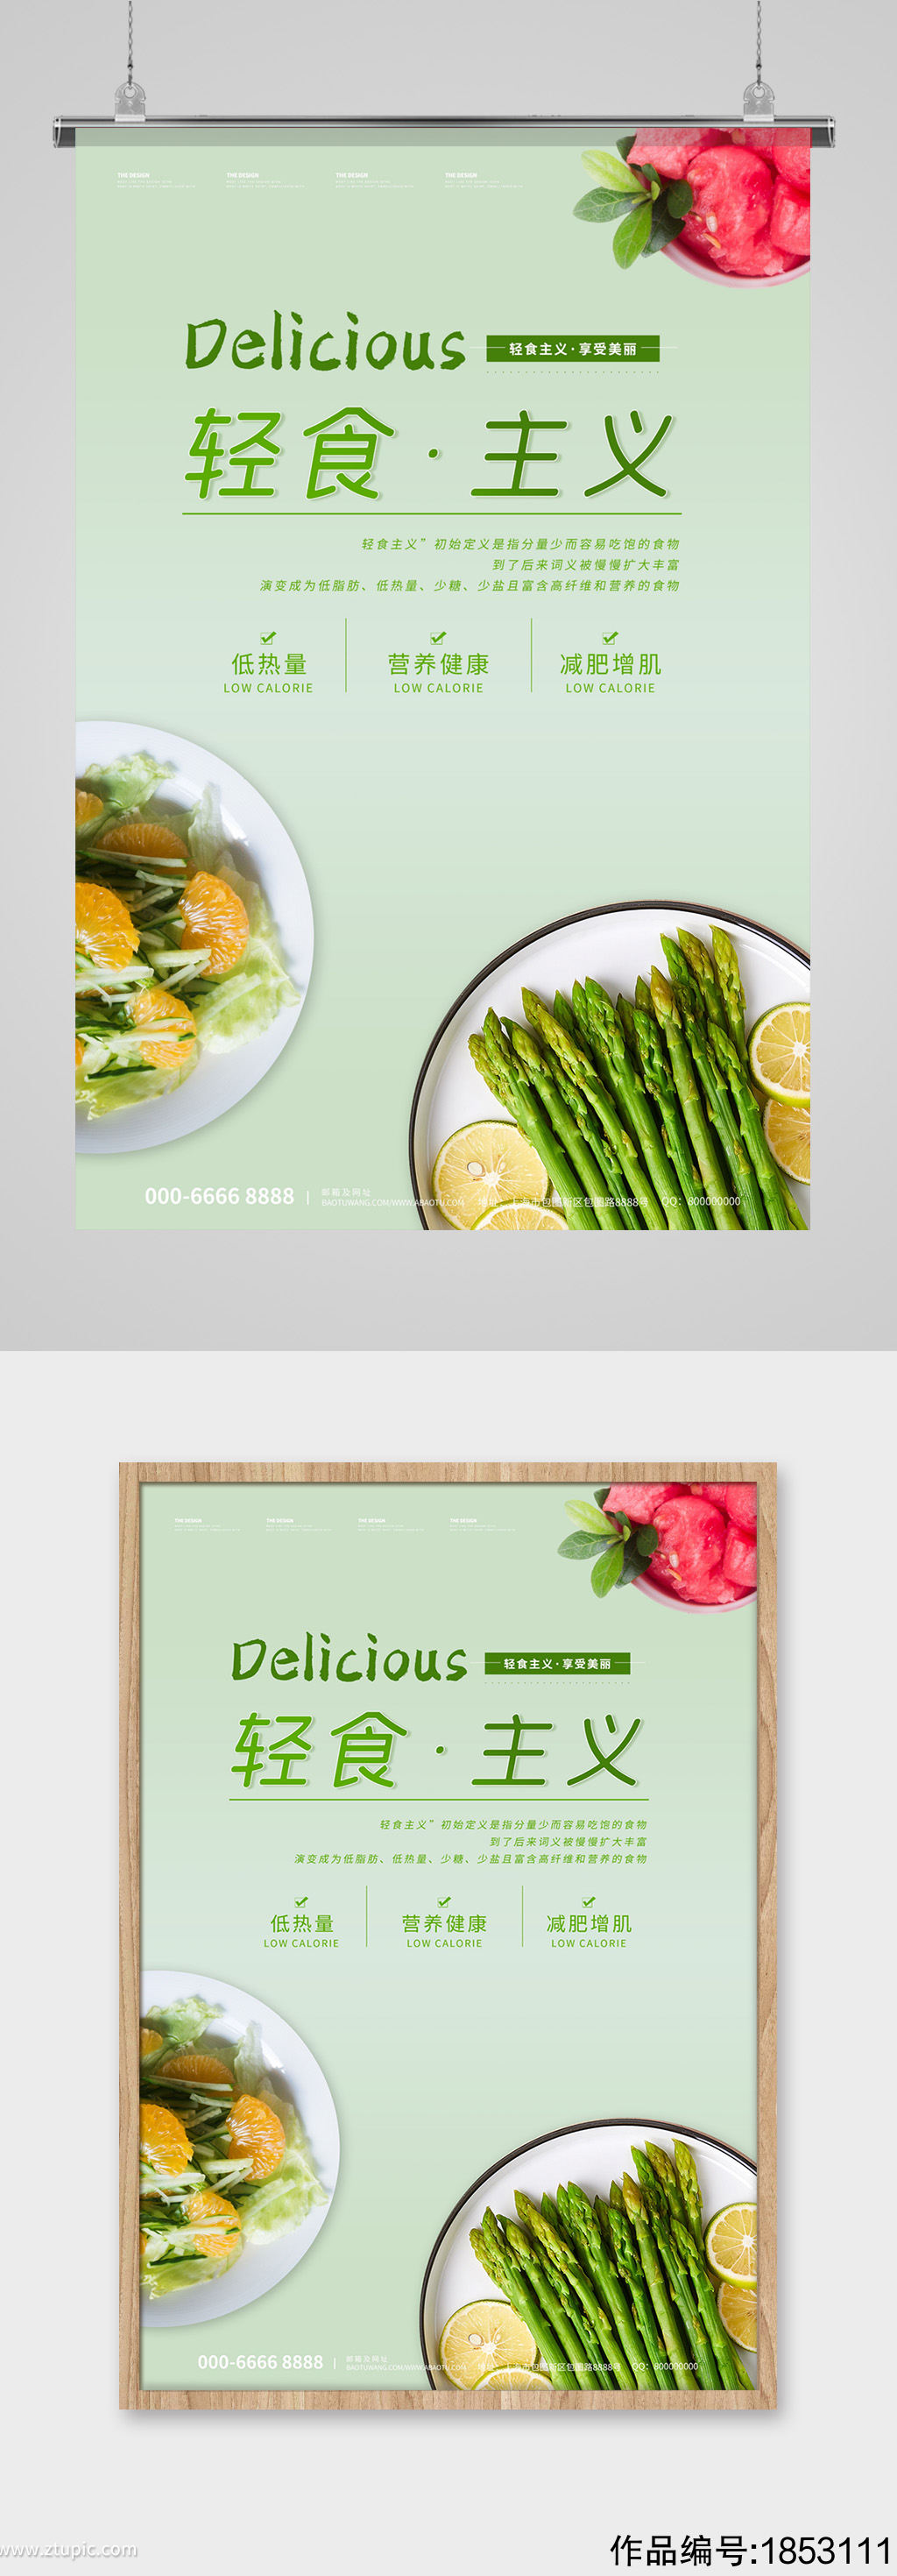 清新绿色简约轻食主义享受美丽合成风格海报